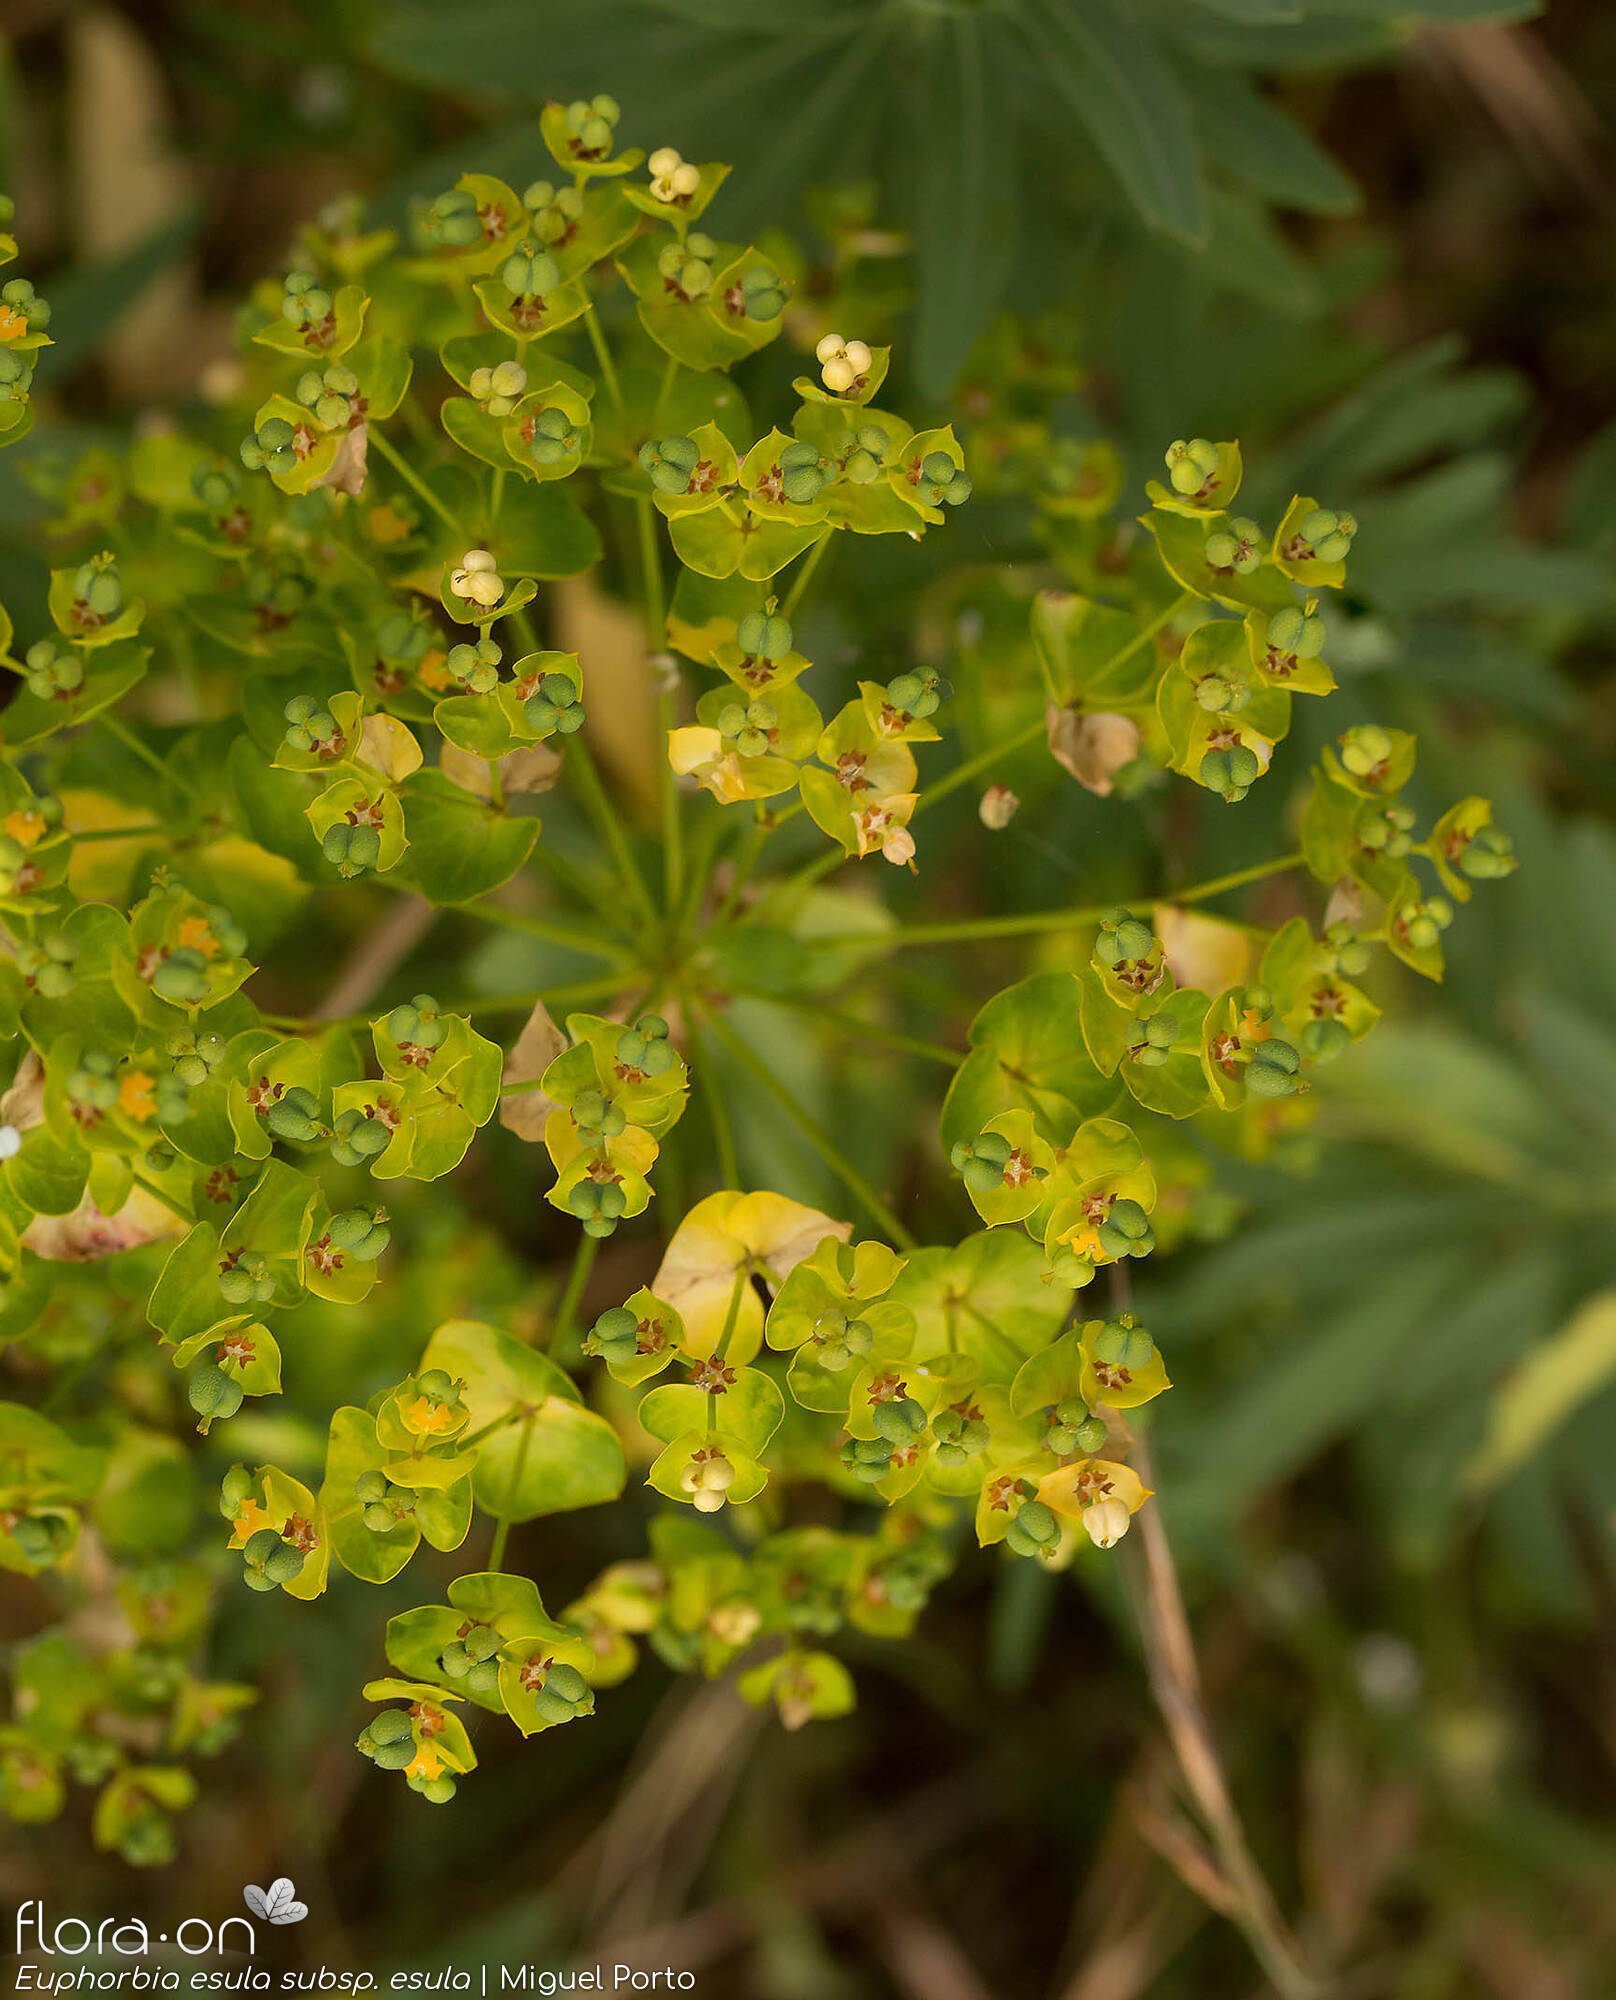 Euphorbia esula esula - Flor (geral) | Miguel Porto; CC BY-NC 4.0